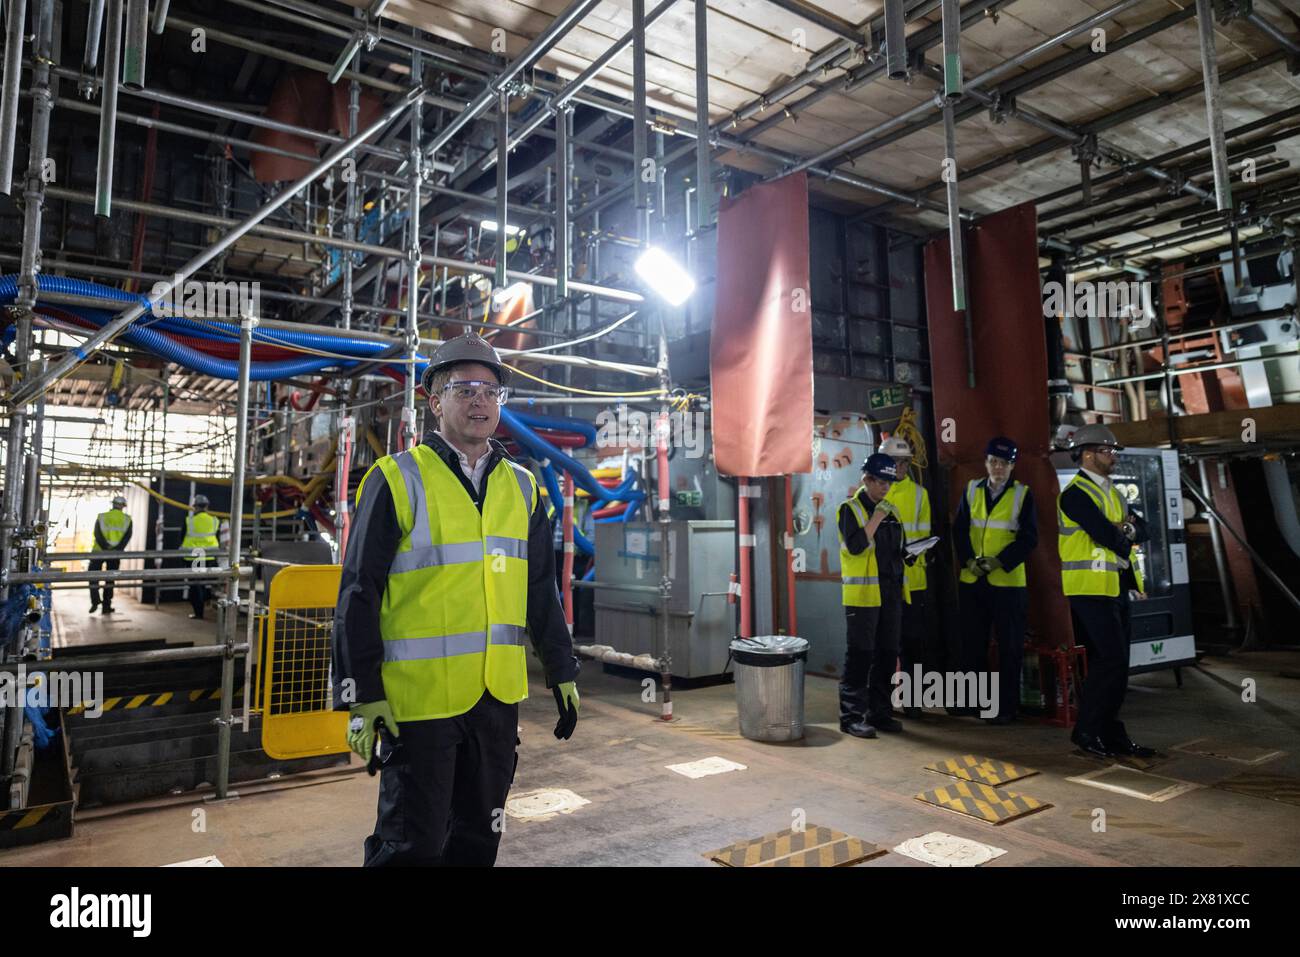 Il segretario alla difesa Grant Shapps in visita alla BAE Systems a Glasgow, in riunione con personale e apprendisti, osservando i significativi progressi nella produzione di navi da guerra. Foto Stock